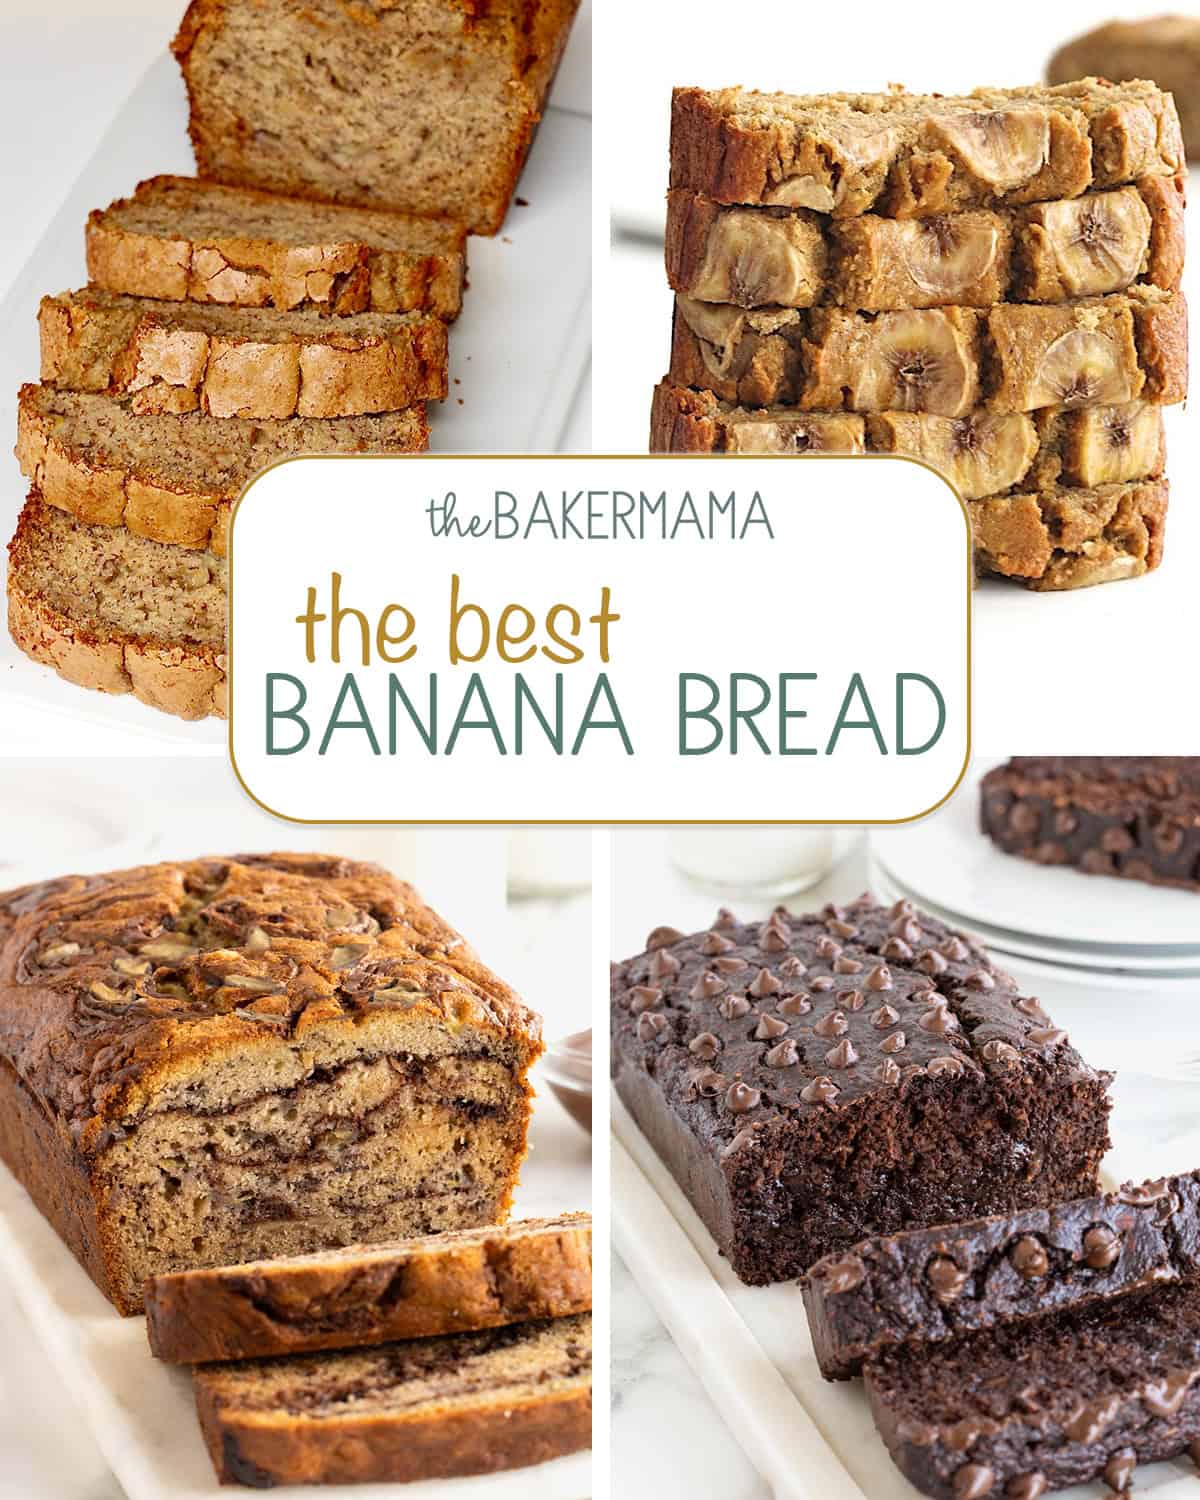 Classic Banana Bread, Flourless Banana Bread, Nutella Swirled Banana Bread, Flourless Chocolate Banana Bread.